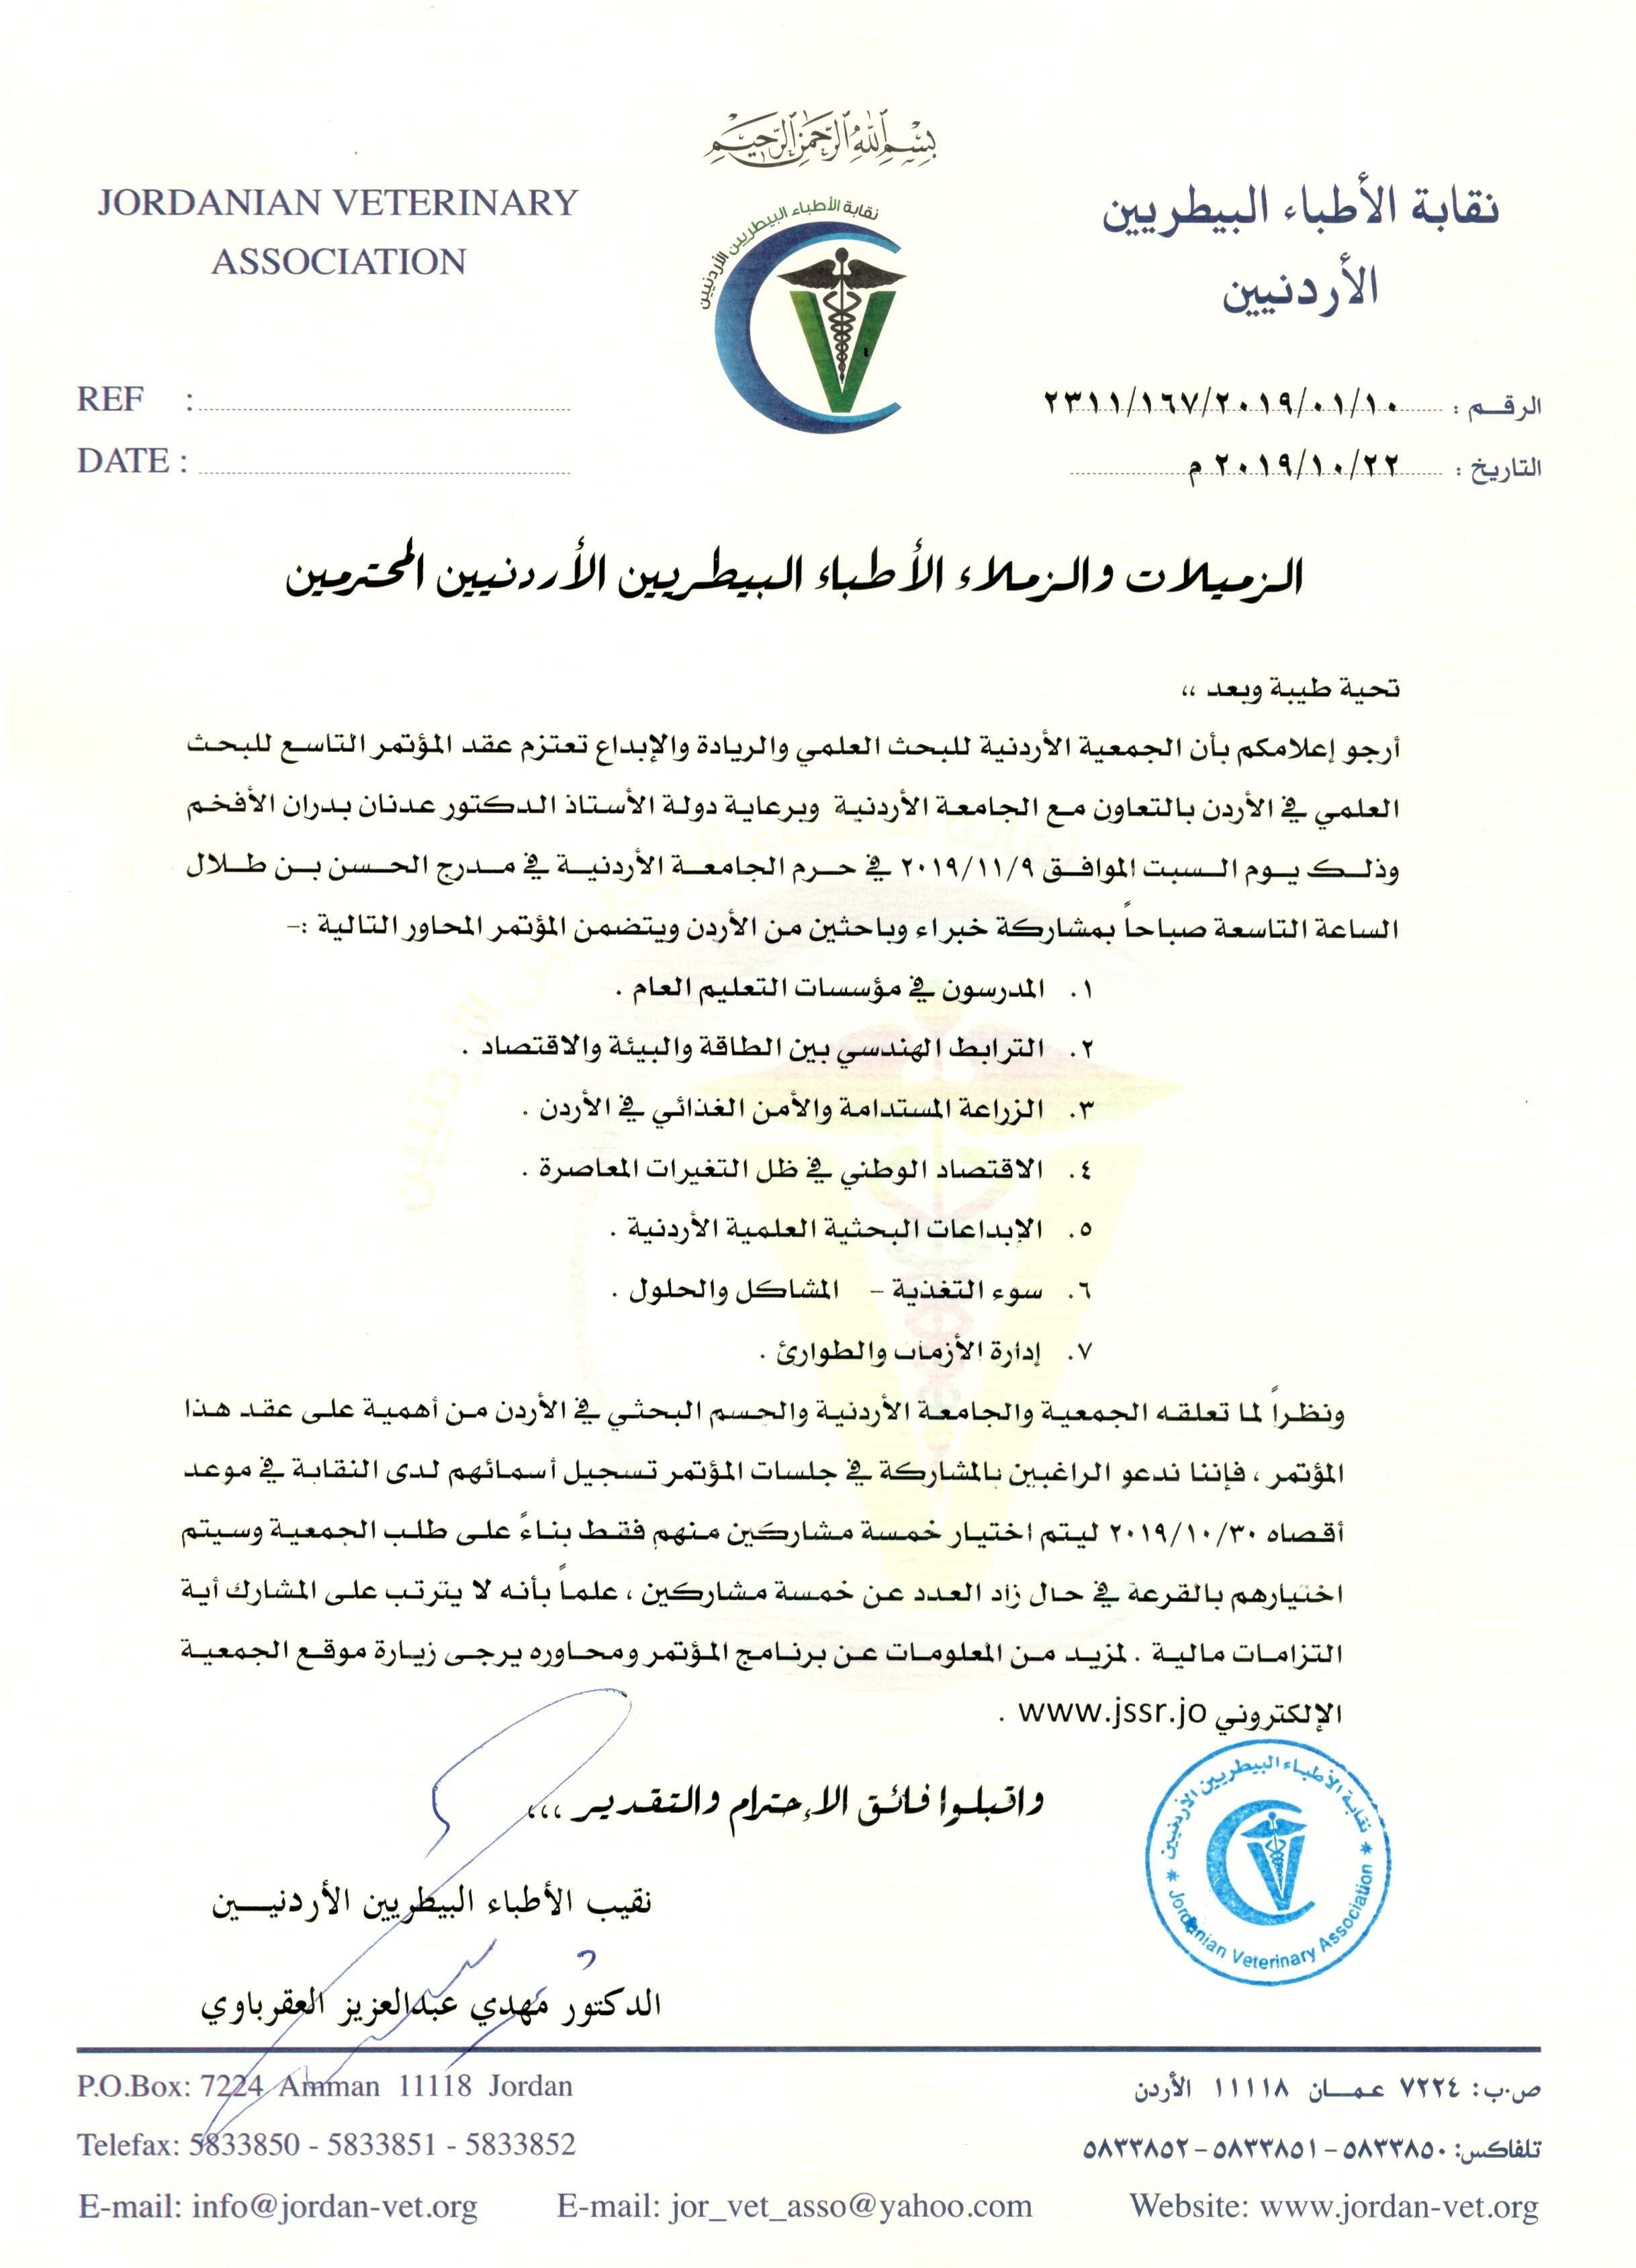 نقابة الأطباء البيطريين الأردنيين النقابة في سطور